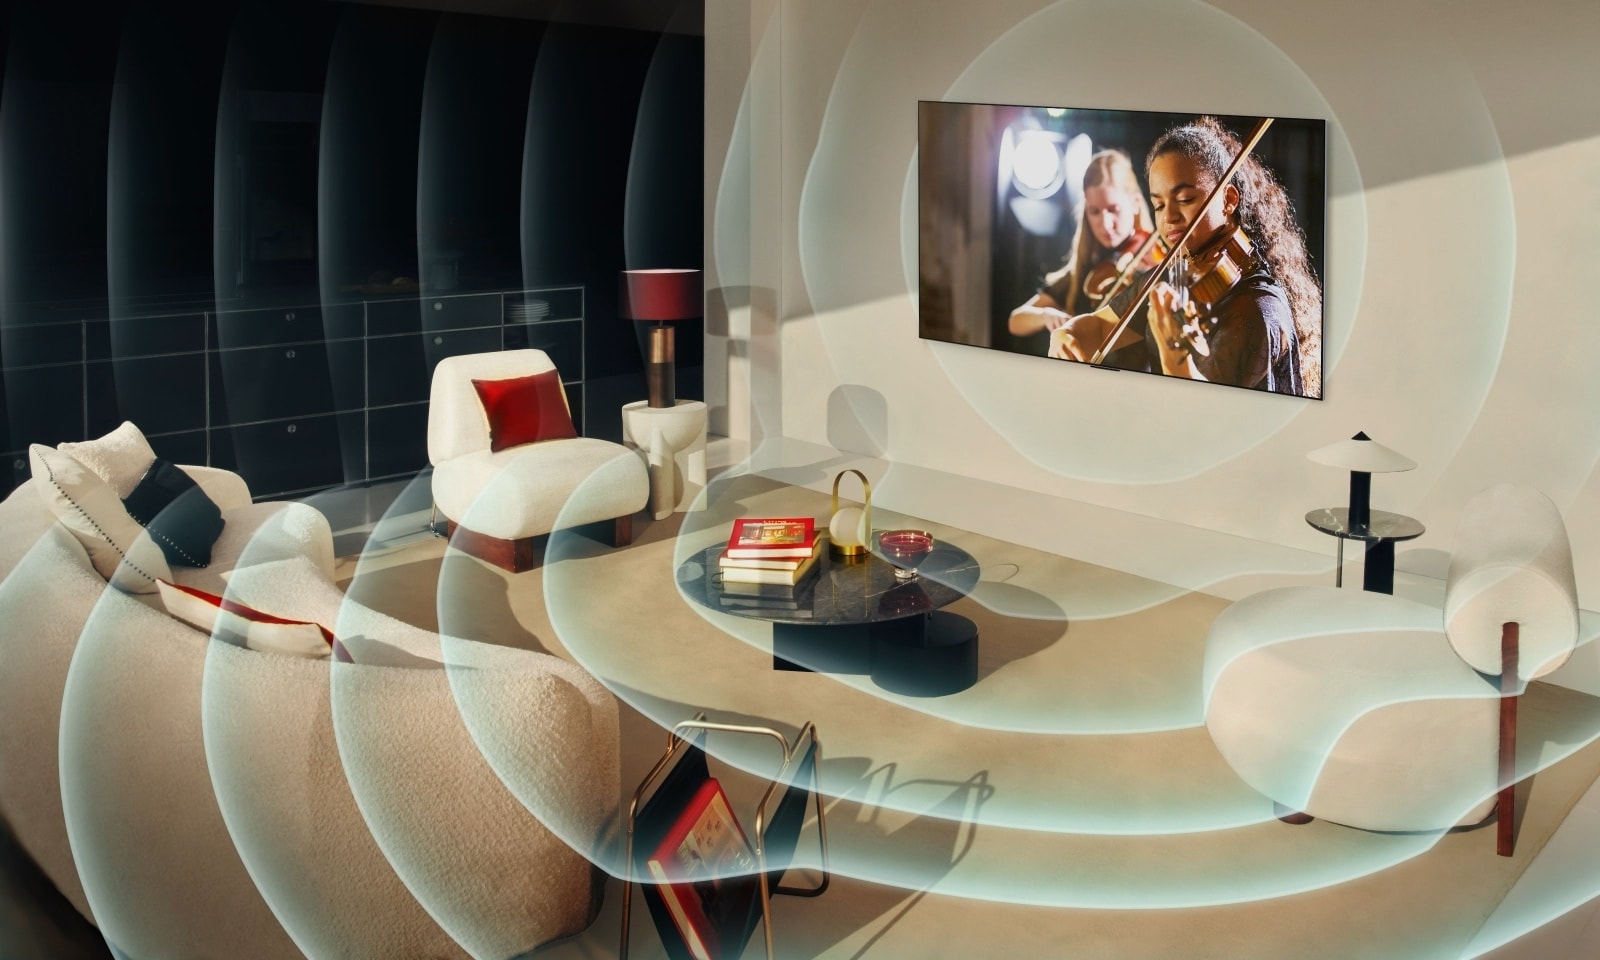 LG OLED TV v modernem stanovanju v mestu. Nad sliko se prikaže mreža, kot da se prostor skenira, zaslon pa projicira modre zvočne valove, ki popolnoma napolnijo prostor z zvokom.